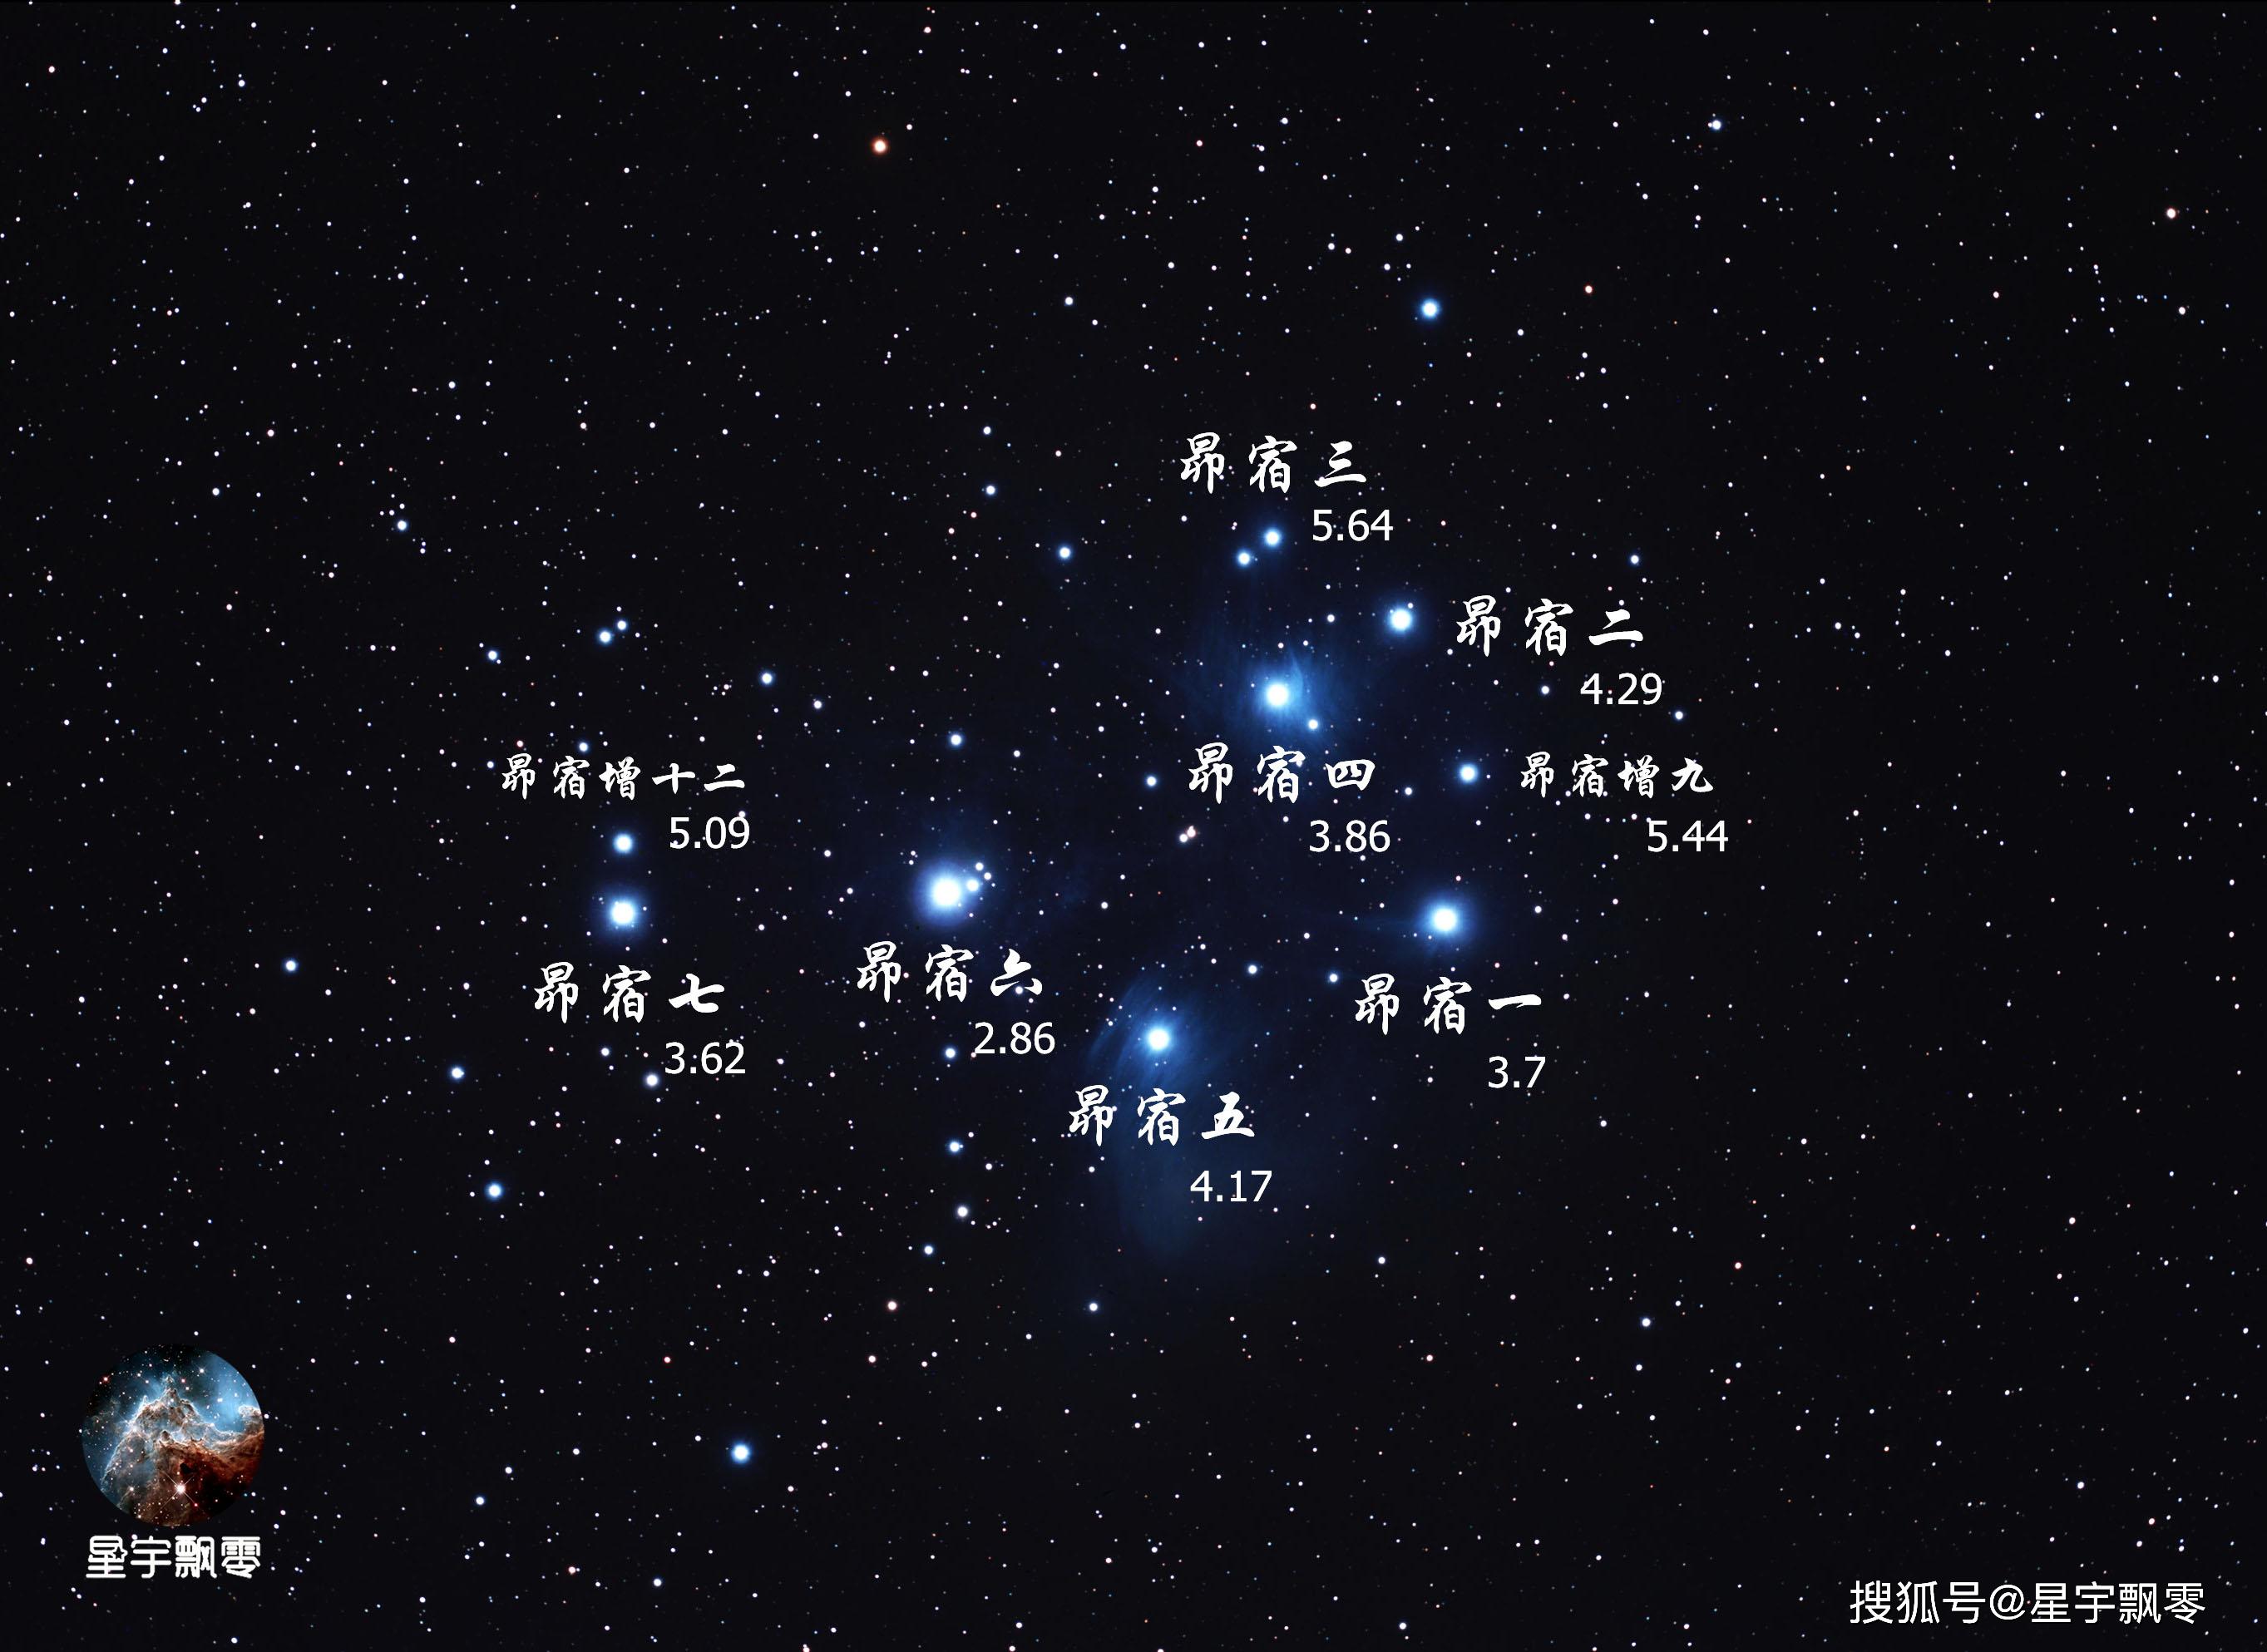 金星合昴番外篇——星空的钻饰:昴星团,一个美丽而年轻的蓝白色星团